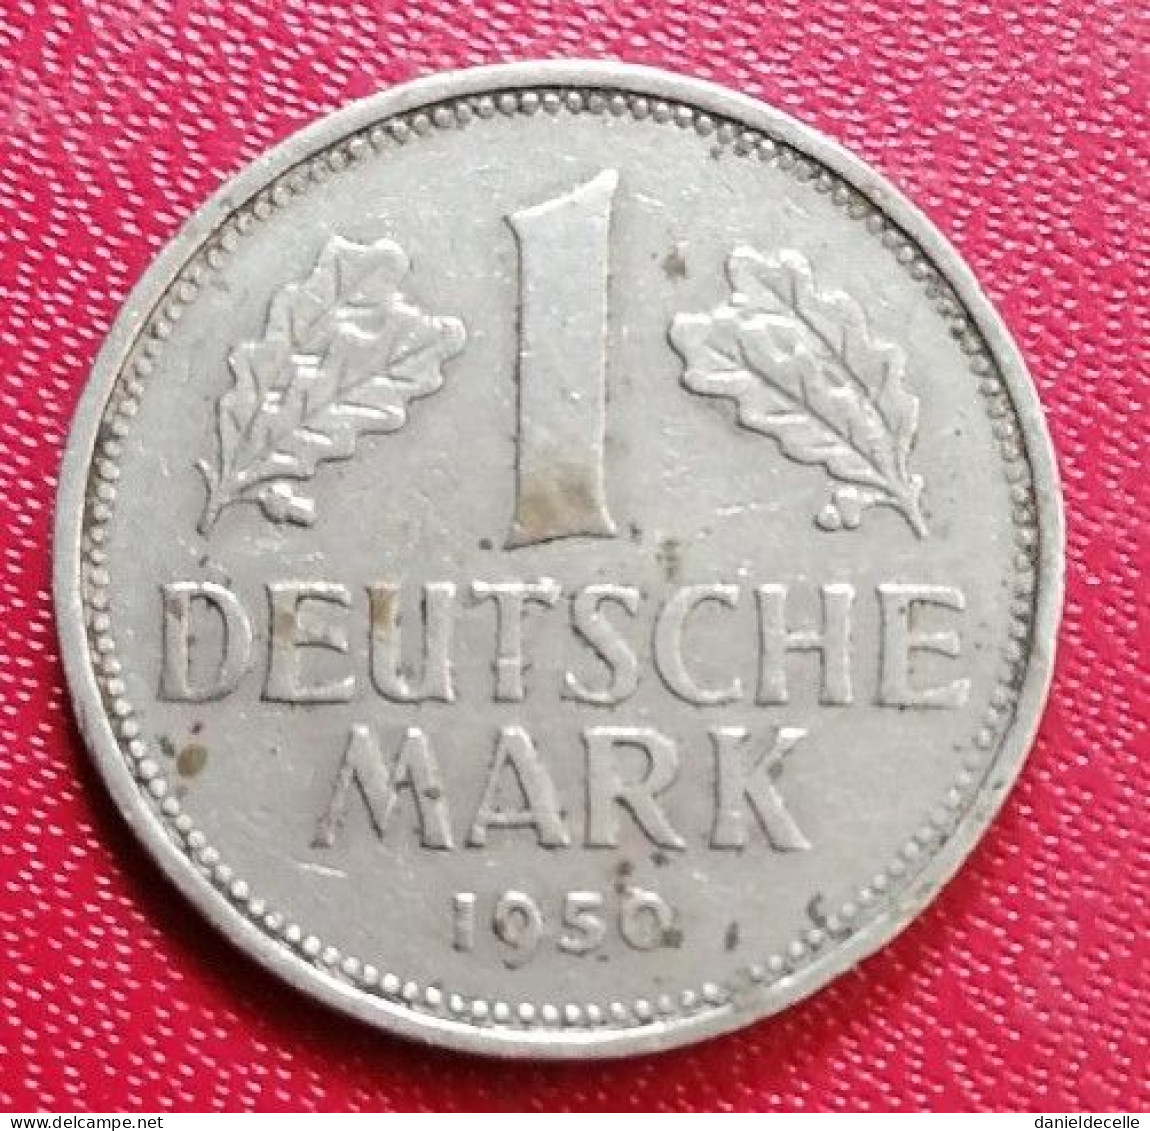 1 Mark RFA 1950 F (Stuttgart) - 1 Mark